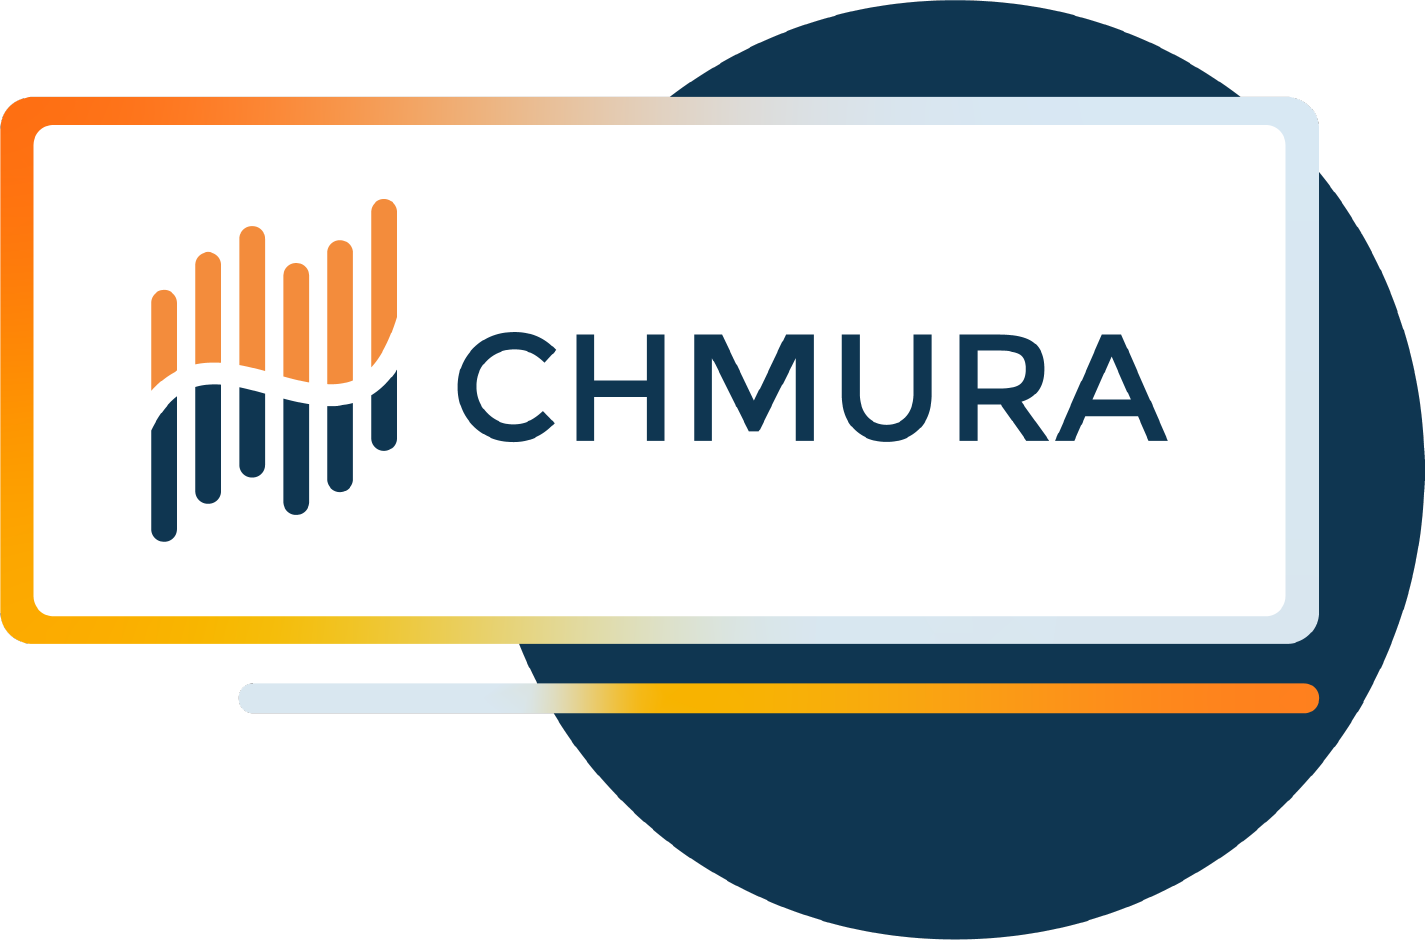 Join the Chmura team